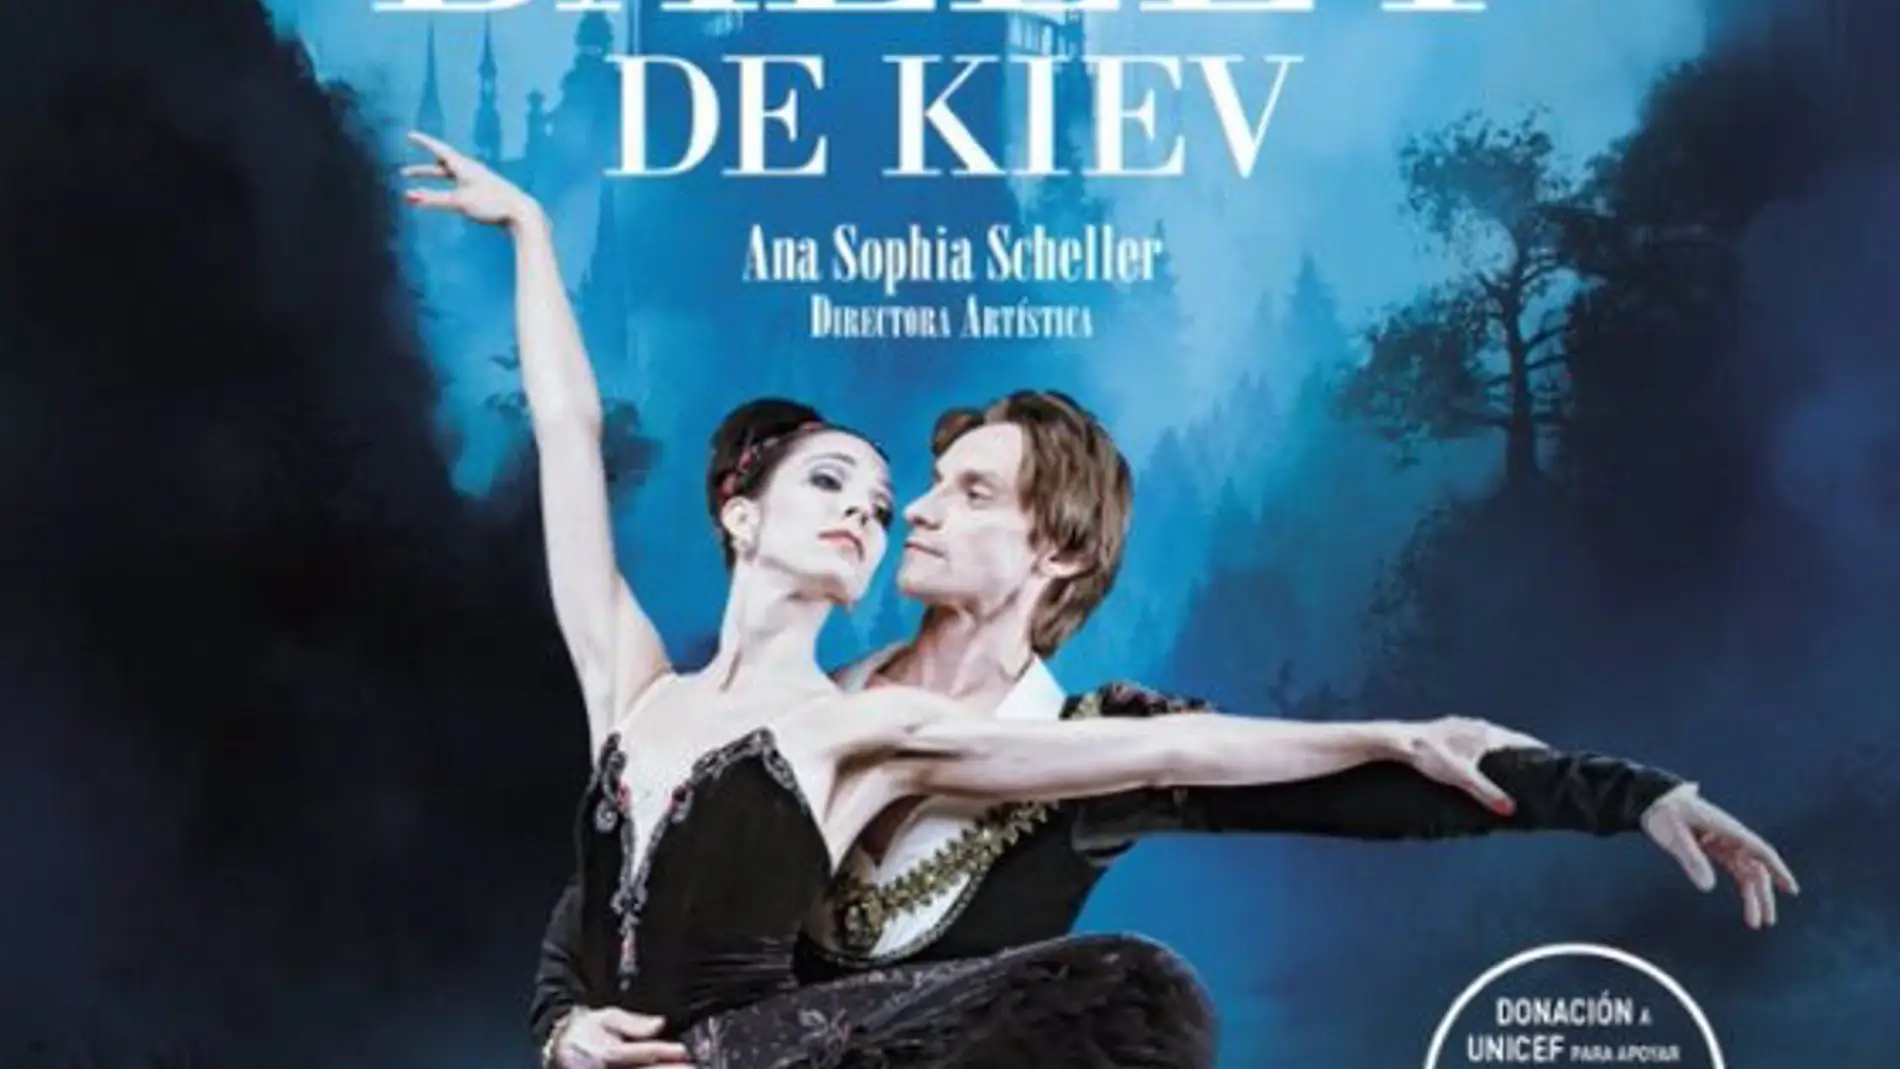 El Ballet de Kiev llega a Cáceres y Badajoz el 29 y 30 de noviembre para apoyar a las familias de Ucrania